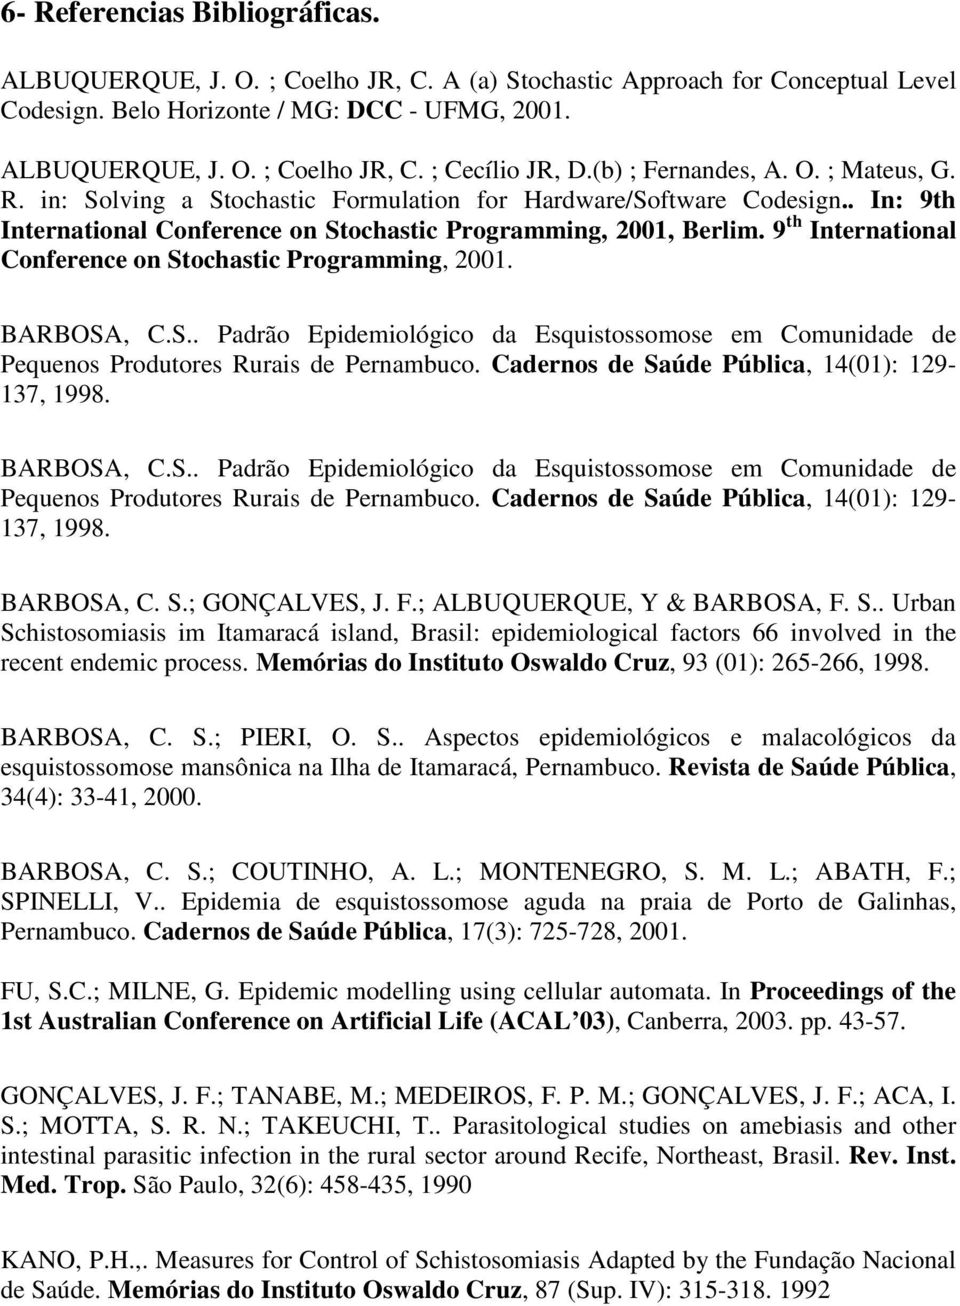 9 th International Conference on Stochastic Programming, 2001. BARBOSA, C.S.. Padrão Epidemiológico da Esquistossomose em Comunidade de Pequenos Produtores Rurais de Pernambuco.